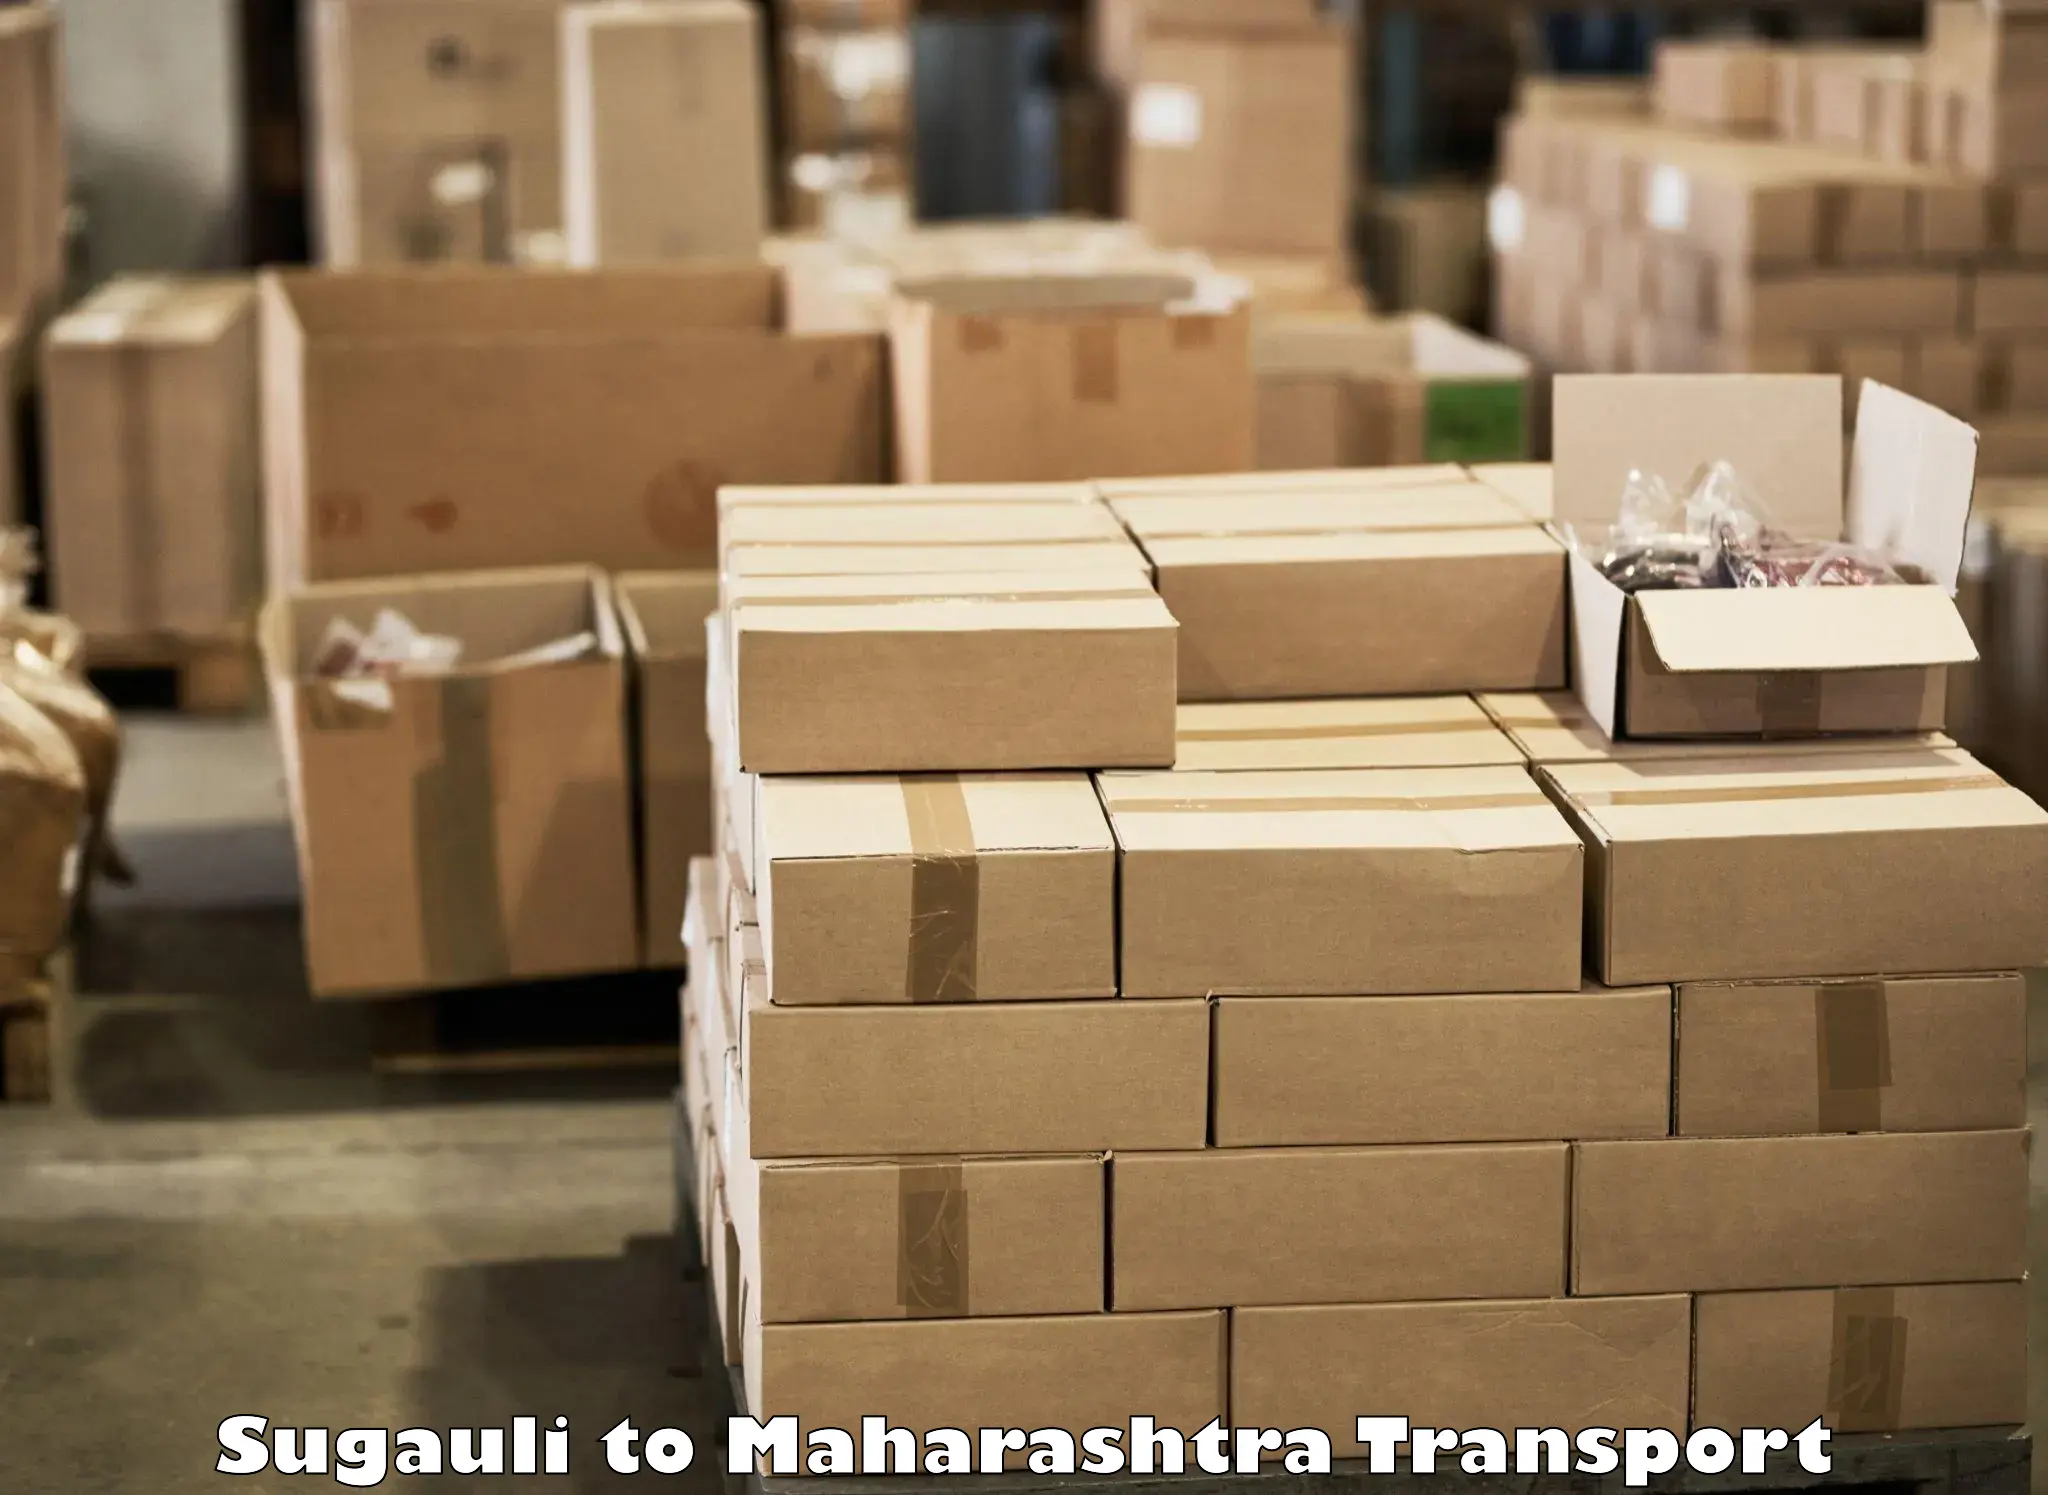 Express transport services Sugauli to Mahabaleshwar